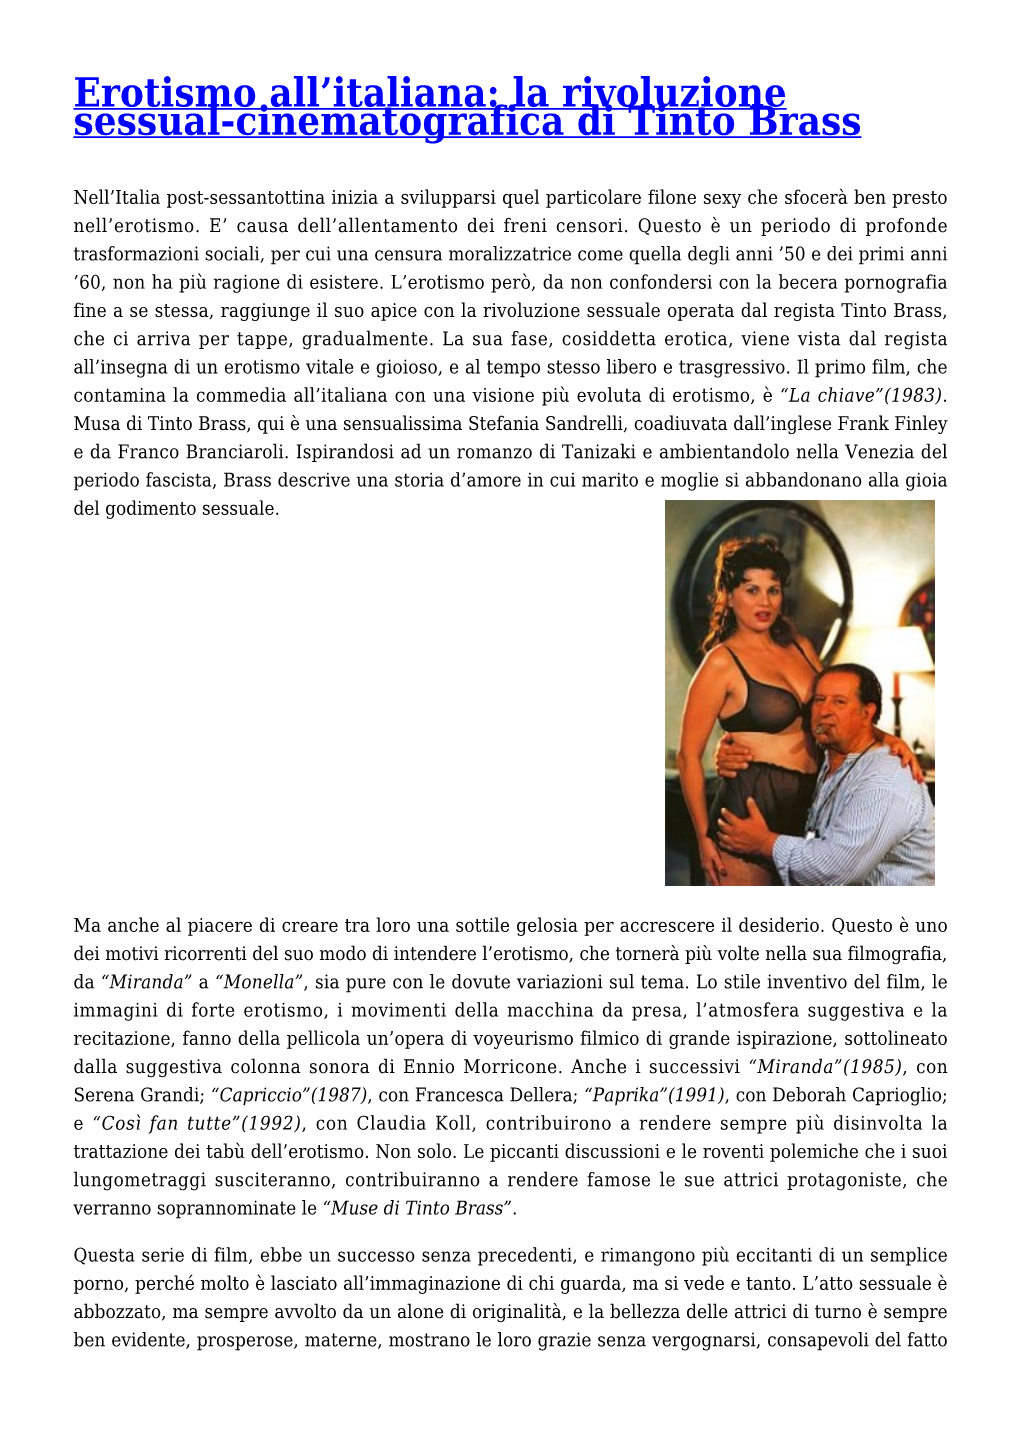 Erotismo All'italiana: La Rivoluzione Sessual-Cinematografica Di Tinto